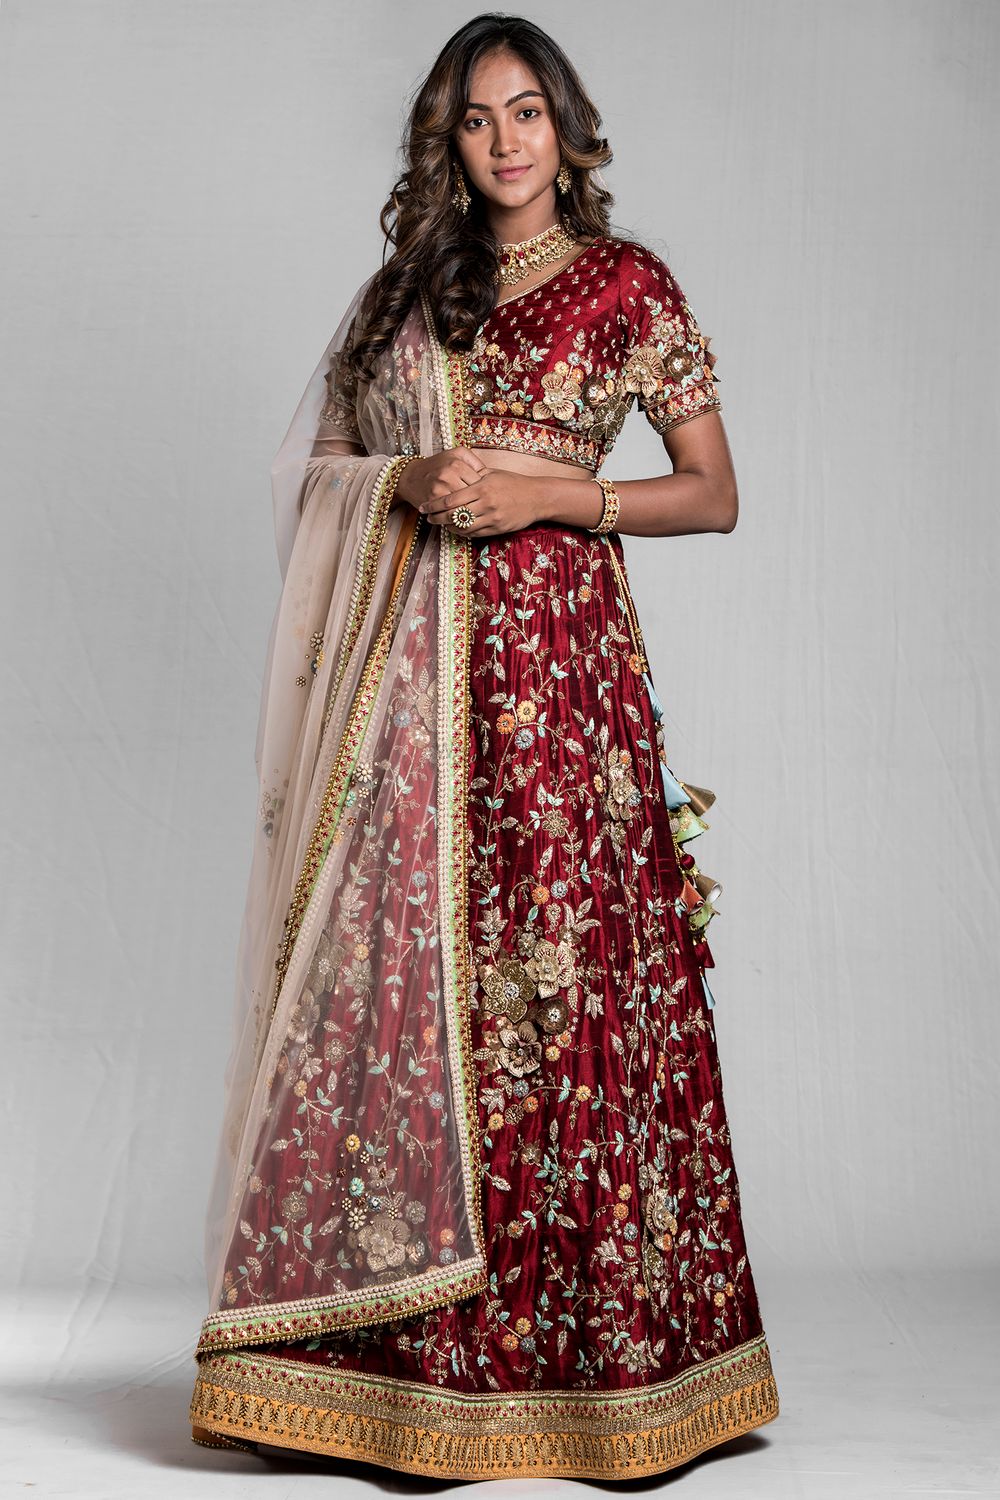 Photo From Red Bridal Lehnga - By Darshi Shah Bhavin Trivedi